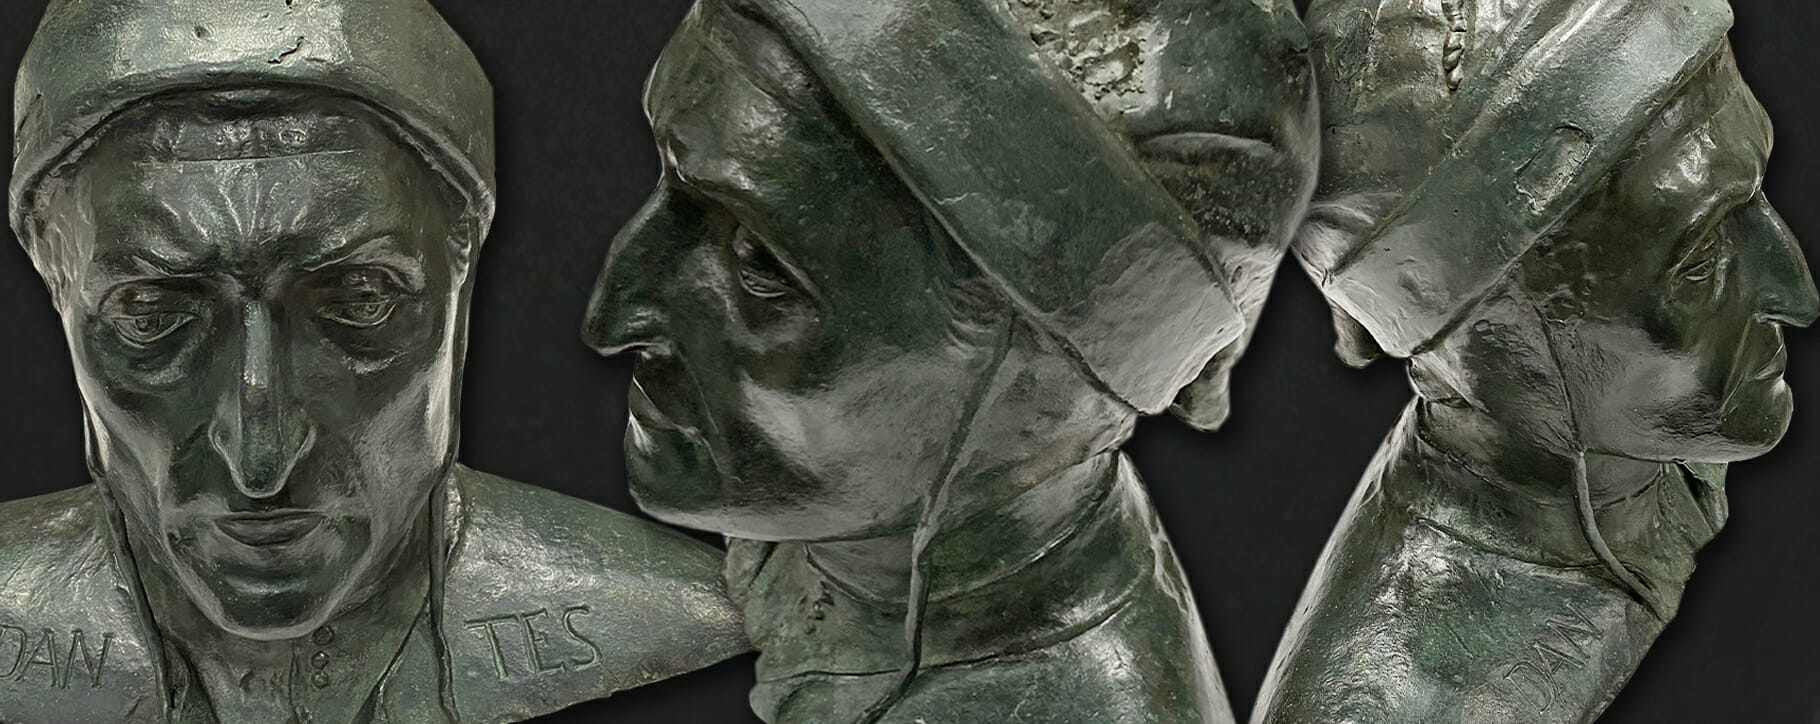 Dante bronze bust after